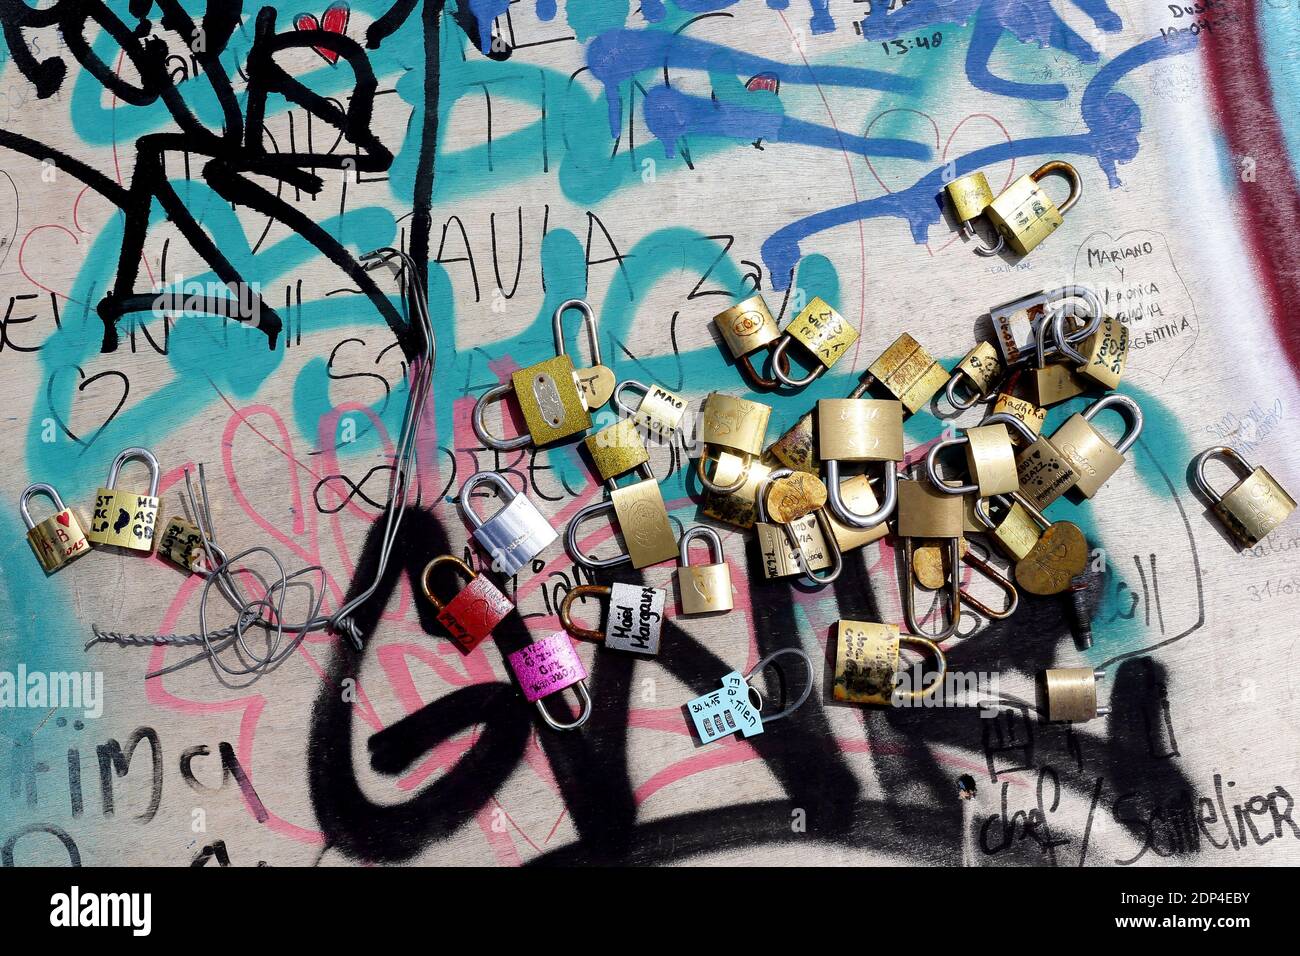 I dipendenti municipali rimuovono le barriere con lucchetti d'amore sul Pont des Arts il 1 giugno 2015 a Parigi, Francia. I funzionari di colore giallo erano fuori la mattina presto del lunedì sul Pont des Arts iconico della città, wielding le attrezzature di taglio per liberare i lucchetti mentre una manciata di turisti curiosi guardato sopra. Parigi, conosciuta in tutto il mondo come la città del romanticismo, lunedì ha iniziato il processo di rimozione di quasi un milione di lucchetti d'amore, incatenati sui ponti della città da coppie innamorate. Foto di Stephane Lemouton/ABACAPRESS.COM Foto Stock